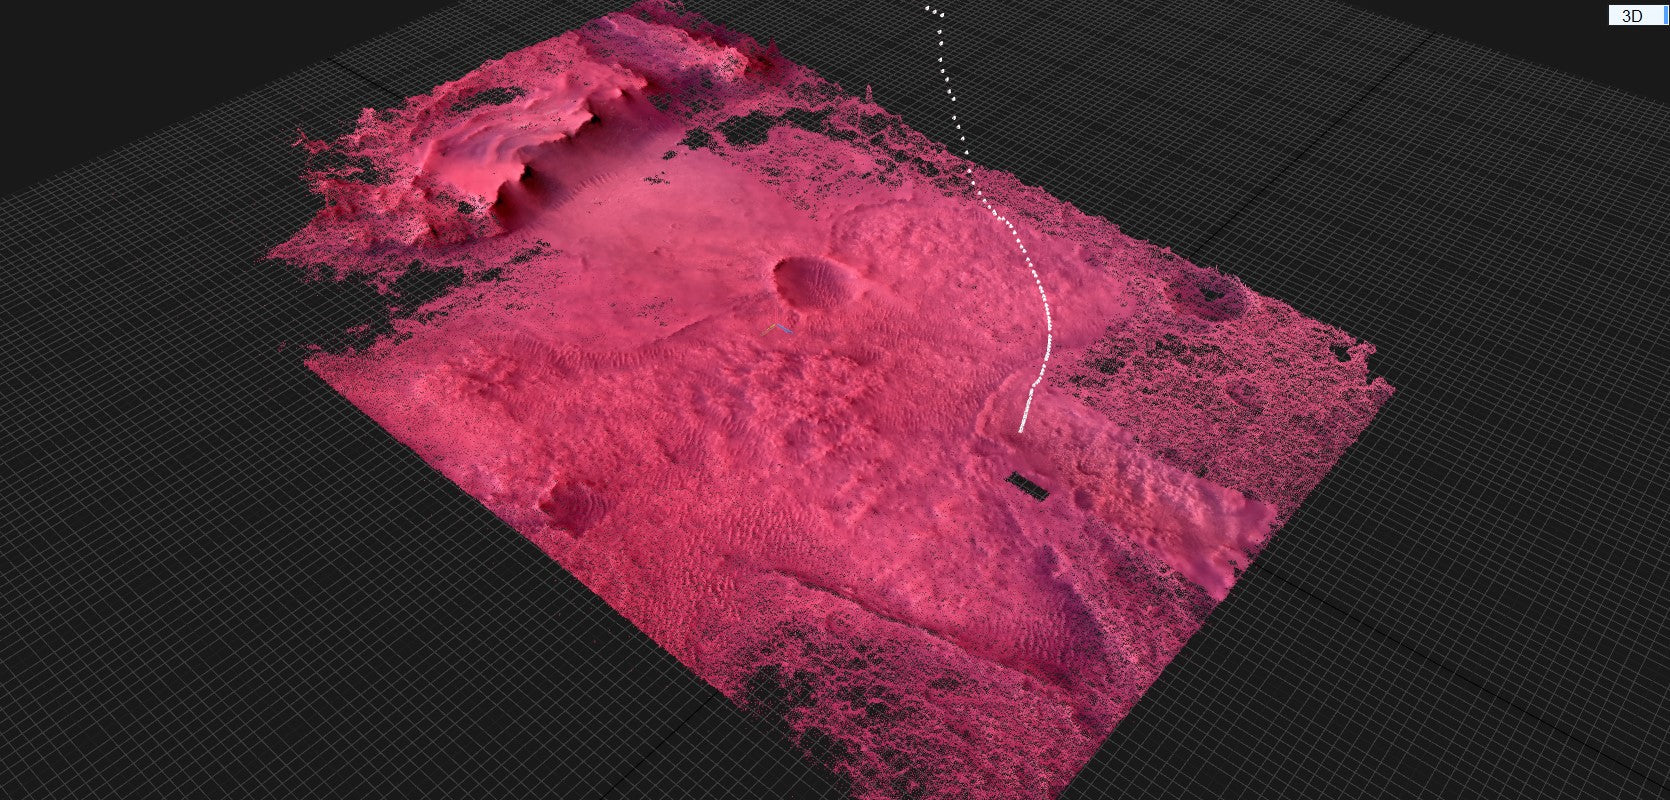 The 3D Red Planet - Ricostruzione 3D fotogrammetrica di Marte